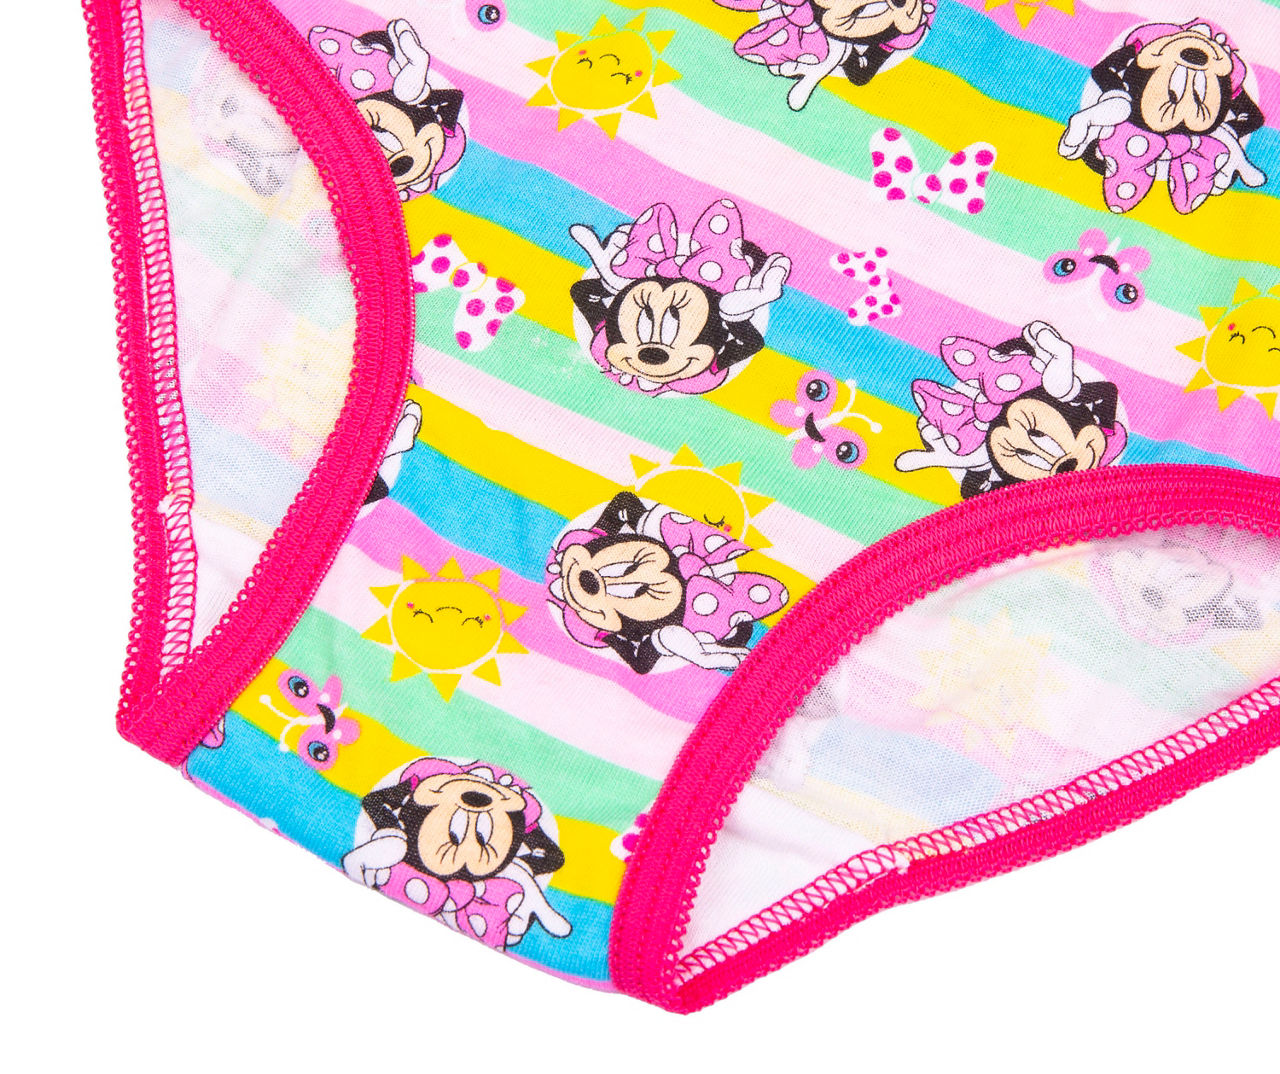 5-pack of Minnie © Disney baby briefs